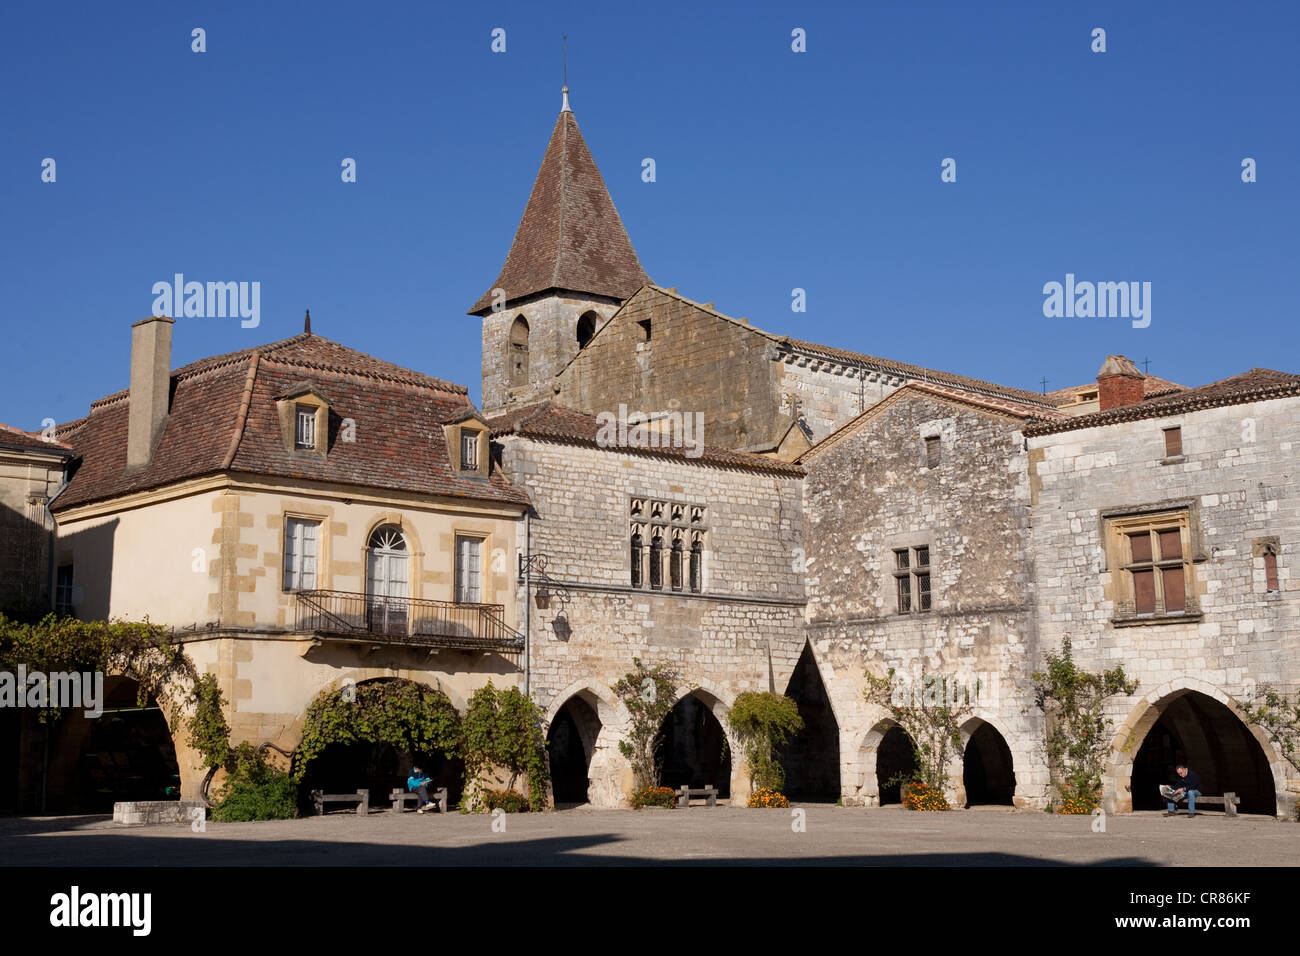 France, Dordogne, Monpazier, labelled Les Plus Beaux Villages de France (The Most Beautiful Villages of France) Stock Photo